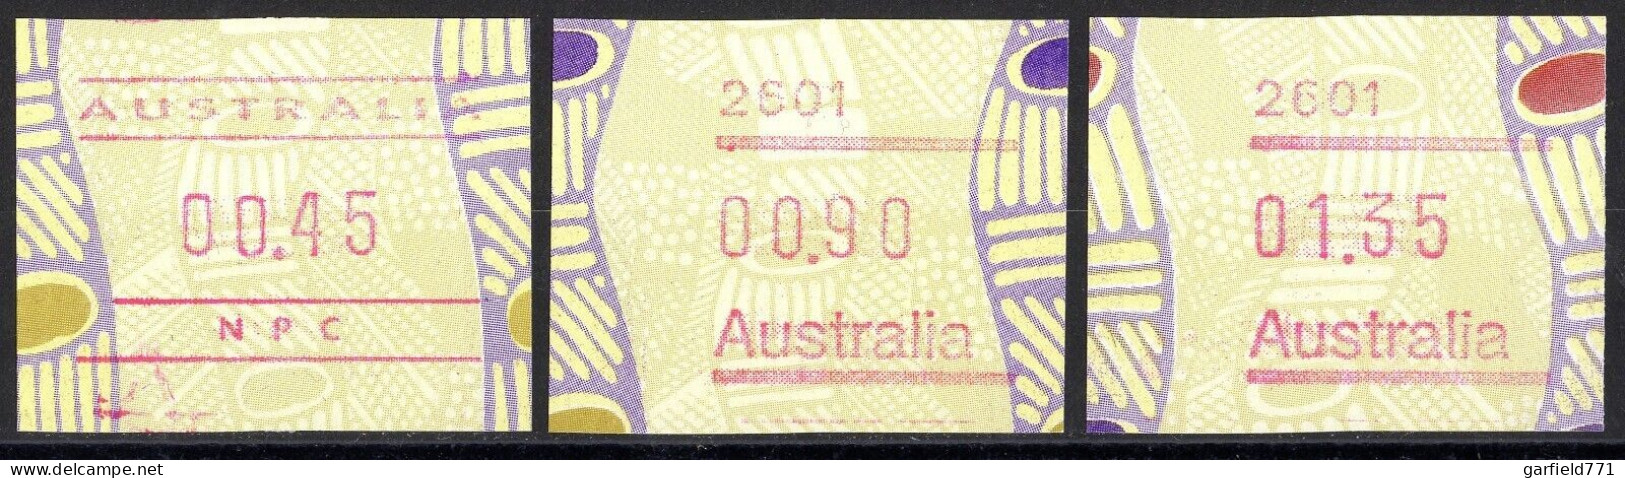 AUSTRALIE AUSTRALIA Frama 1999 Tiwi Art Button Lot Set Of 3 MINT - Postcode 2601 - Ongebruikt